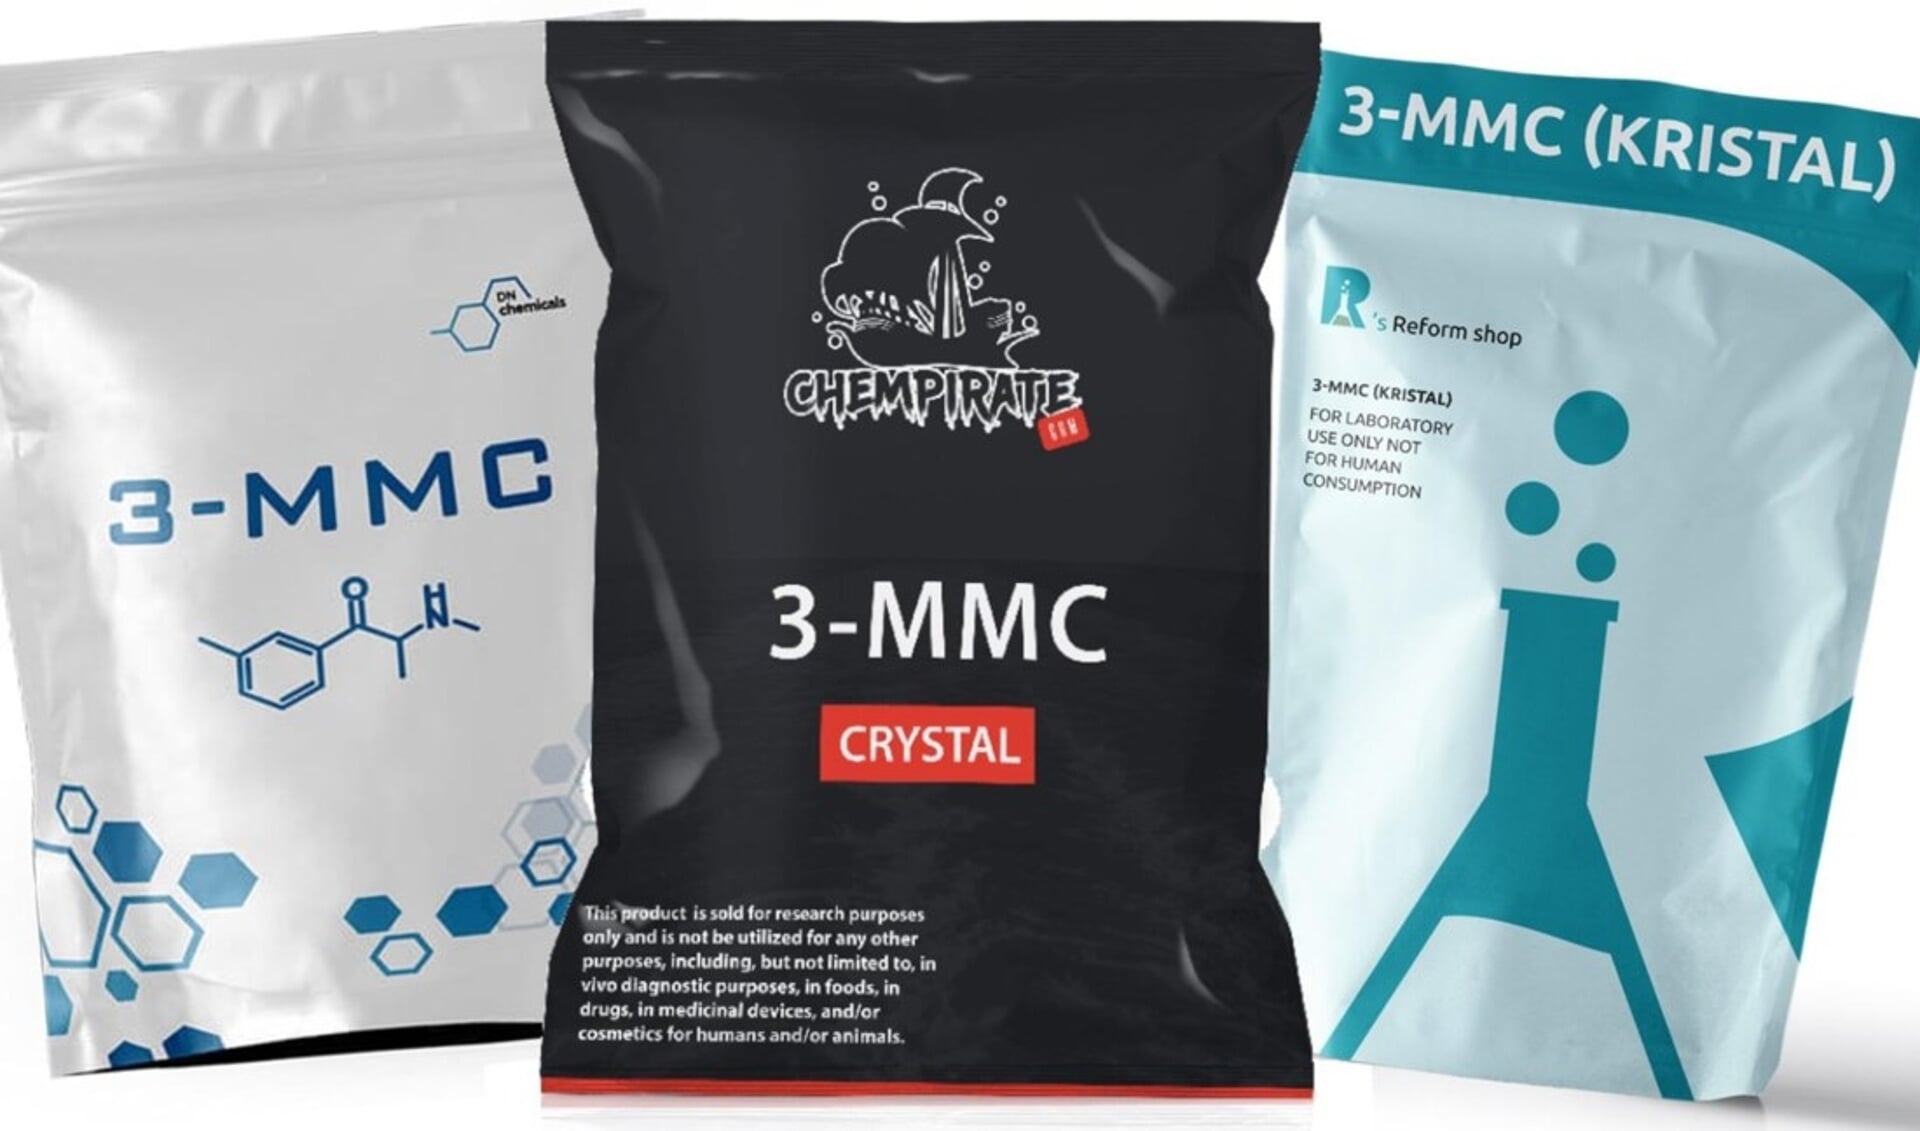 De drug 3-MMC wordt meestal verkocht als kristalachtig wit poeder.